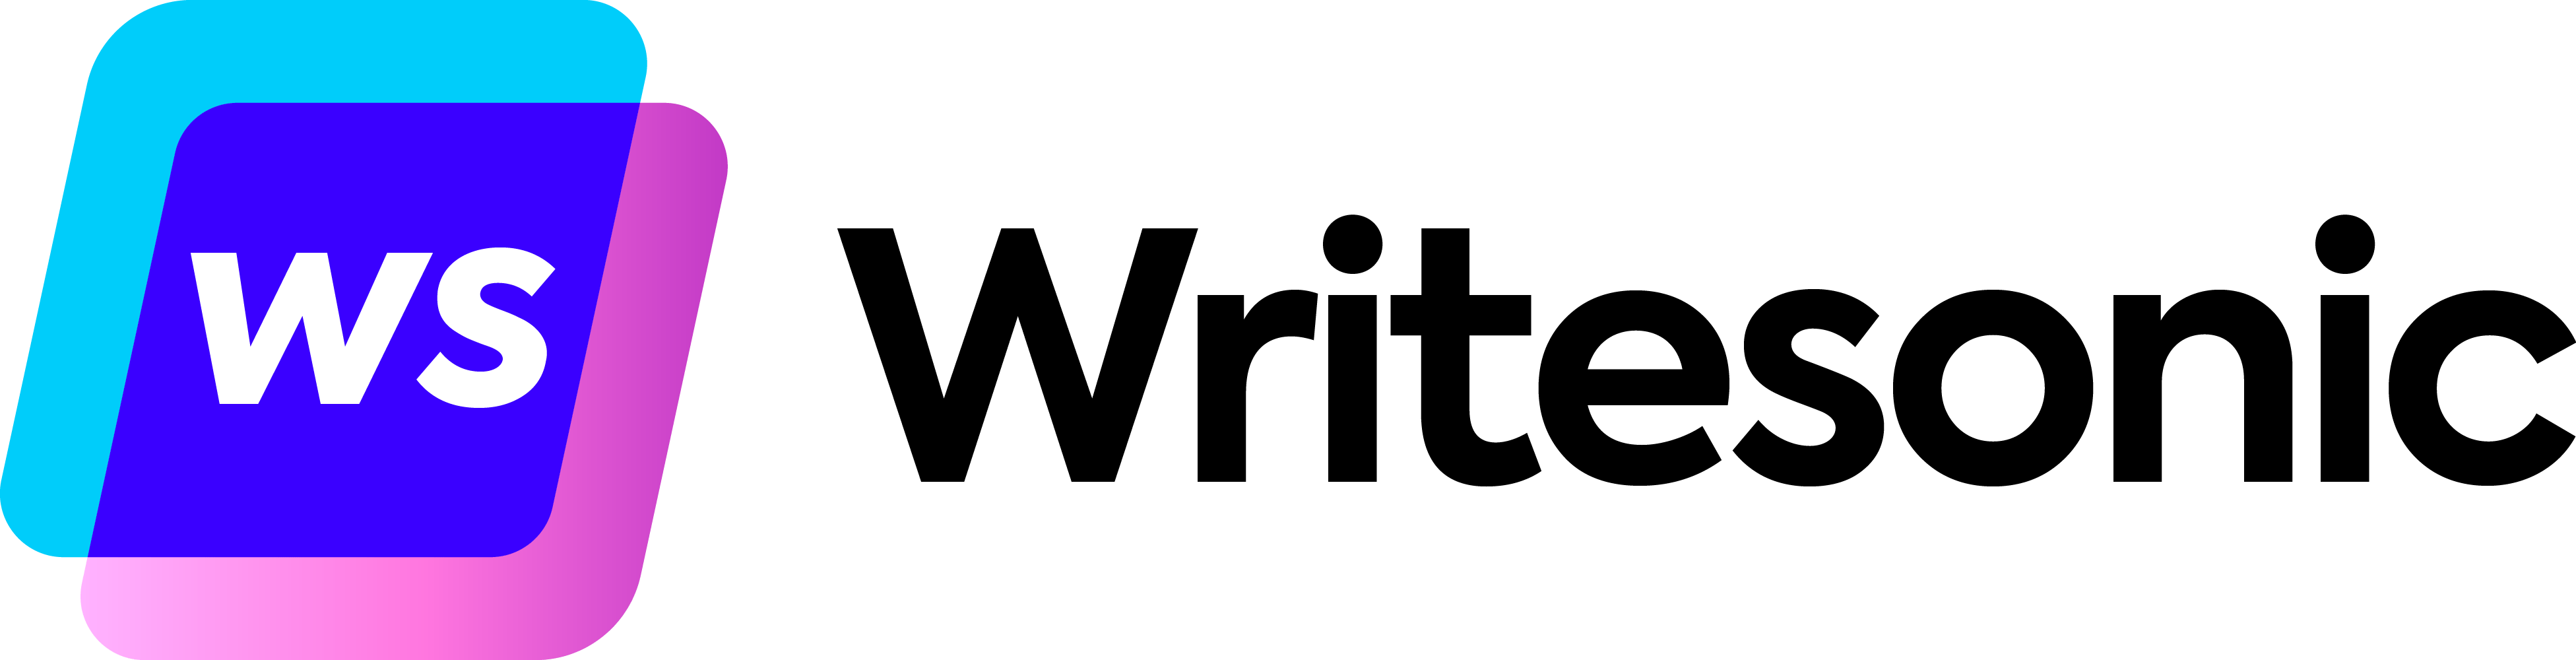 Writesonic-Top-AI-Writer-Tool